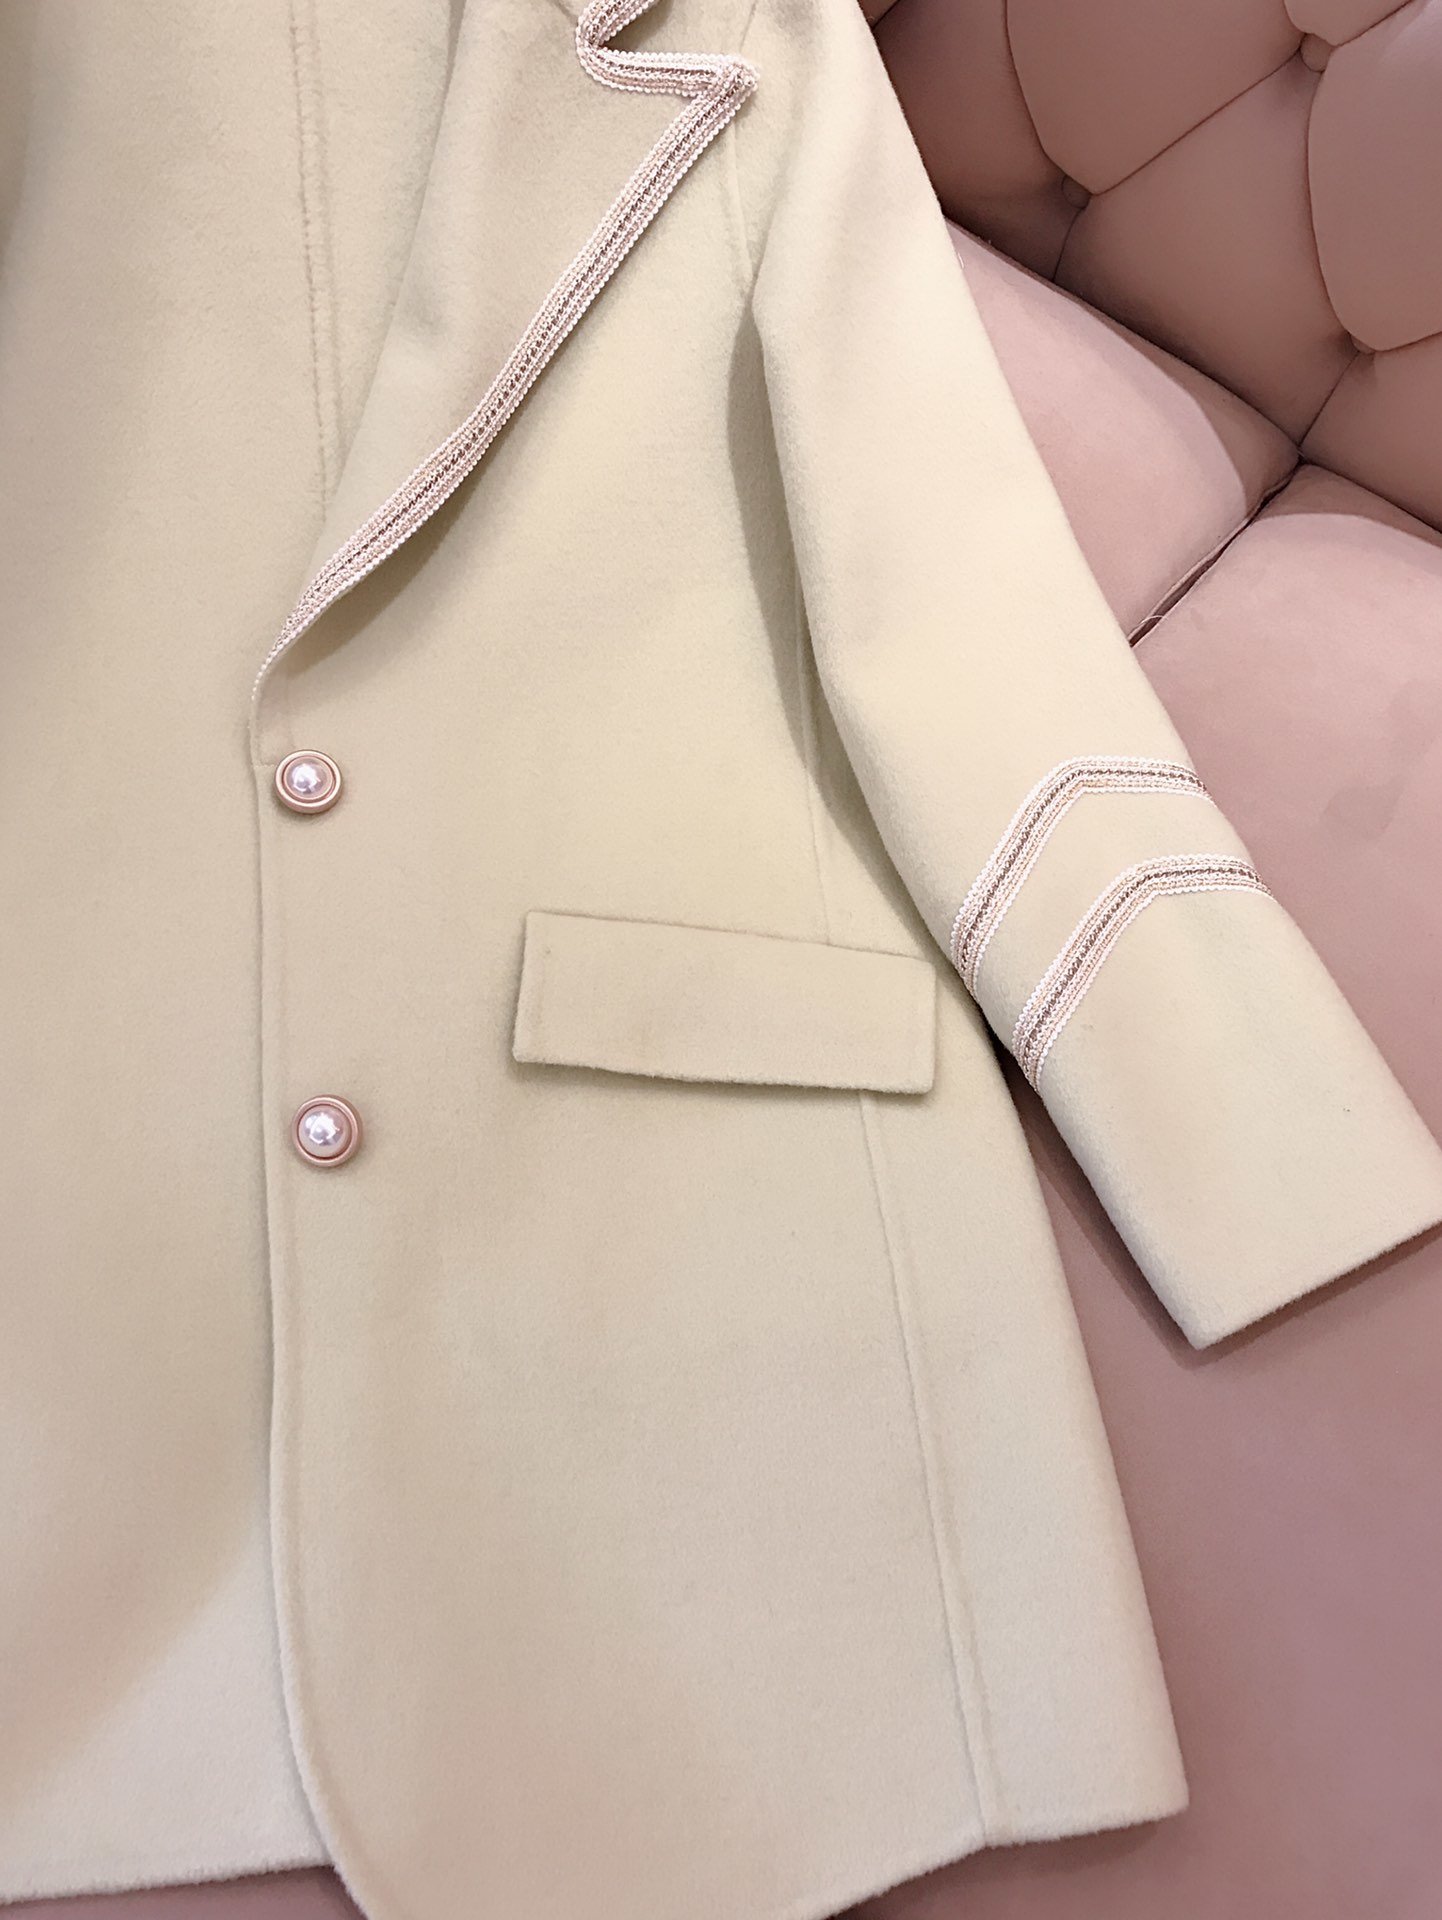 香奈儿大衣新款图片 羊绒大衣外套 CHANEL服装批发市场 - 七七奢侈品